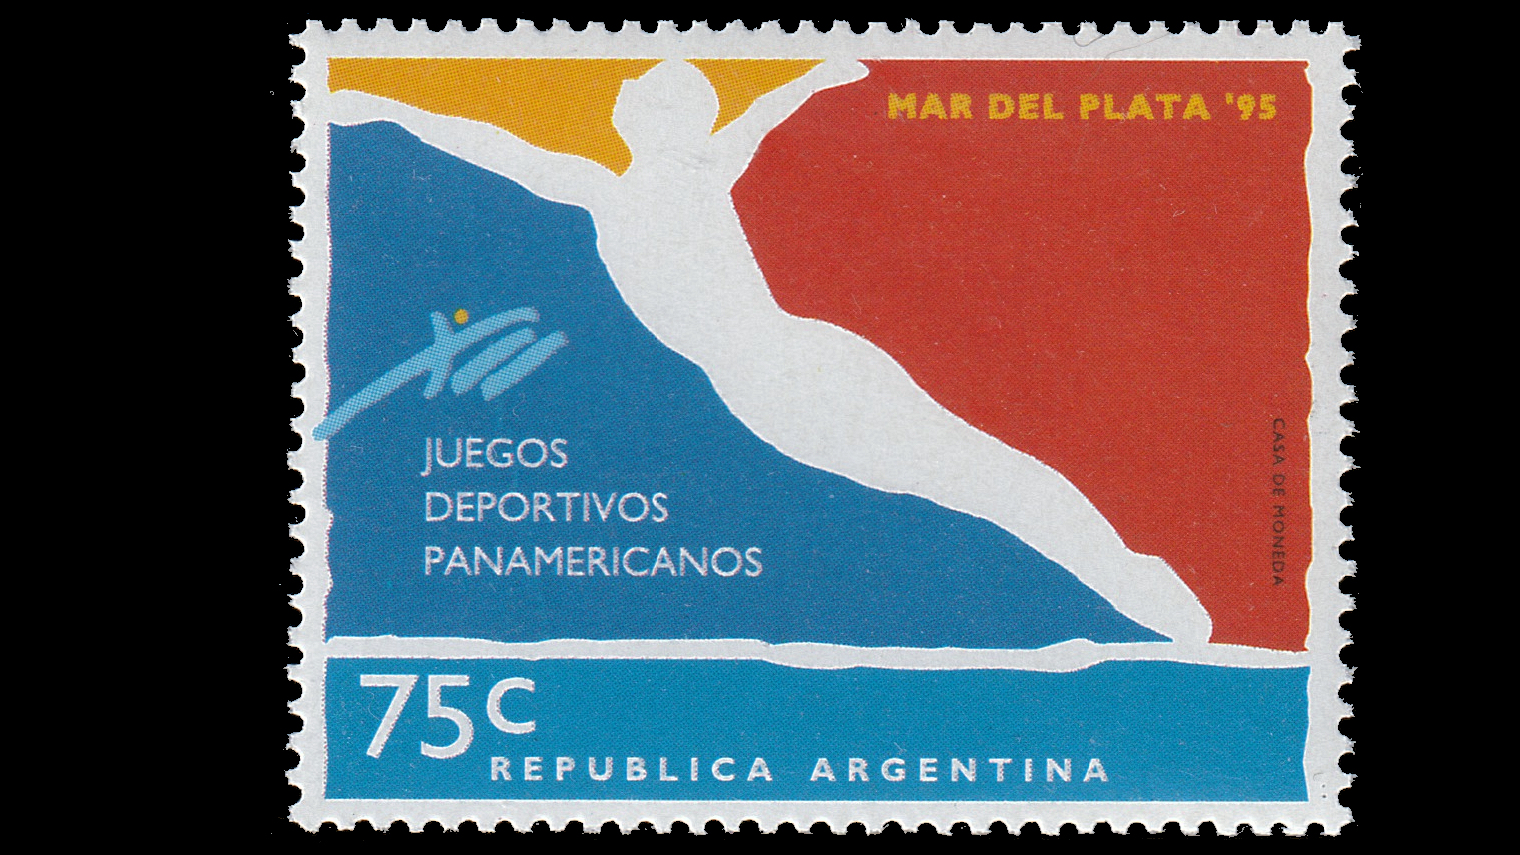 1995 Pan American Games